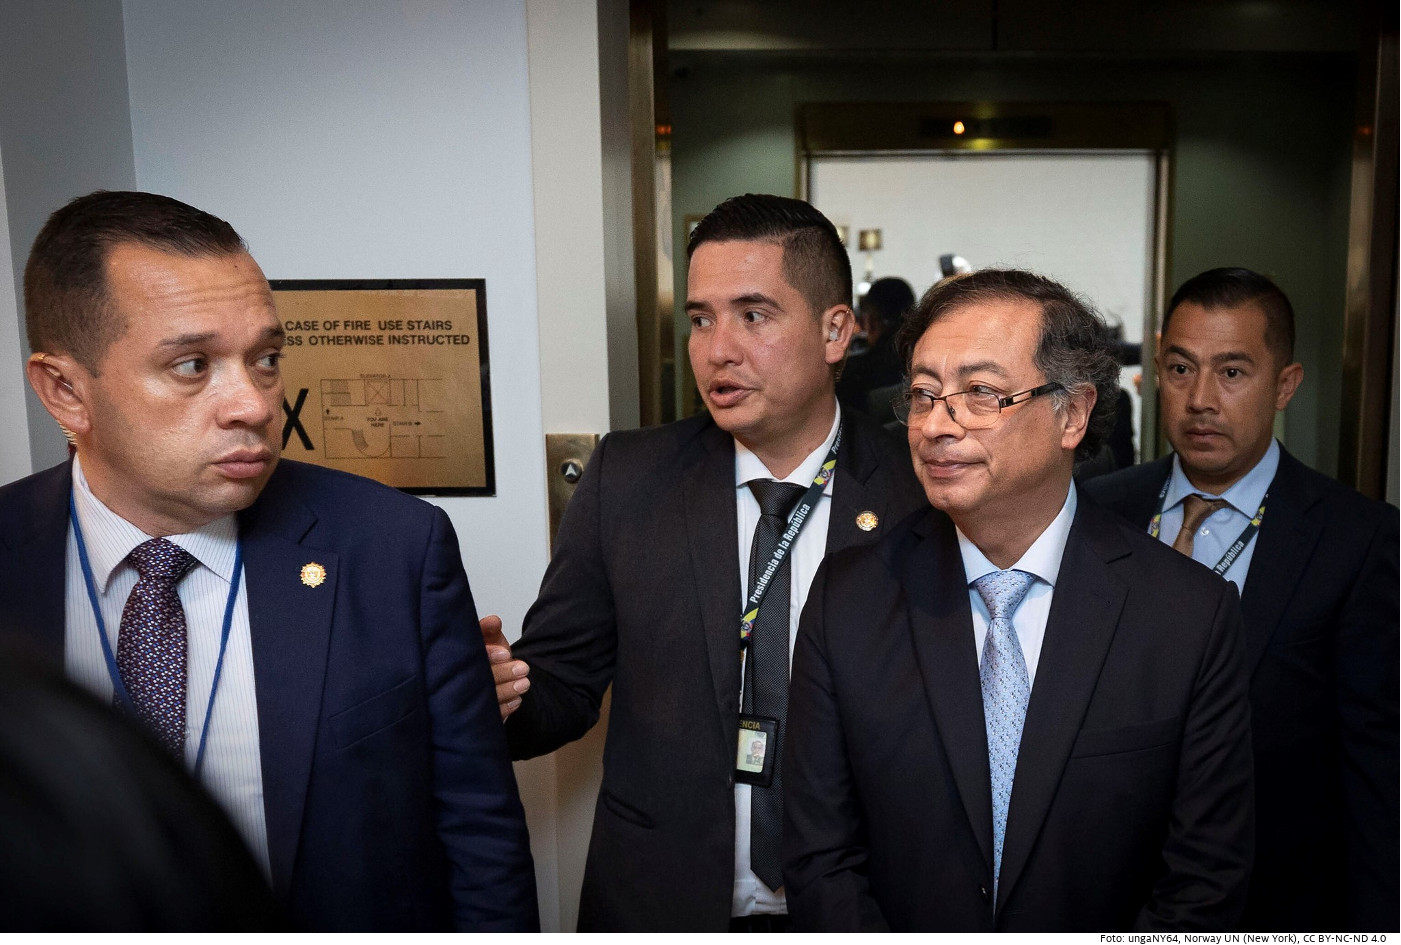 Der kolumbianische Präsident Gustavo Petro (2.v.r.) bei einem Treffen mit dem norwegischen Premierminister am Rande der UN-Vollversammlung in New York am 21. September 2022. Foto: ungaNY64​​​​​​​, Norway UN (New York), CC BY-NC-ND 4.0